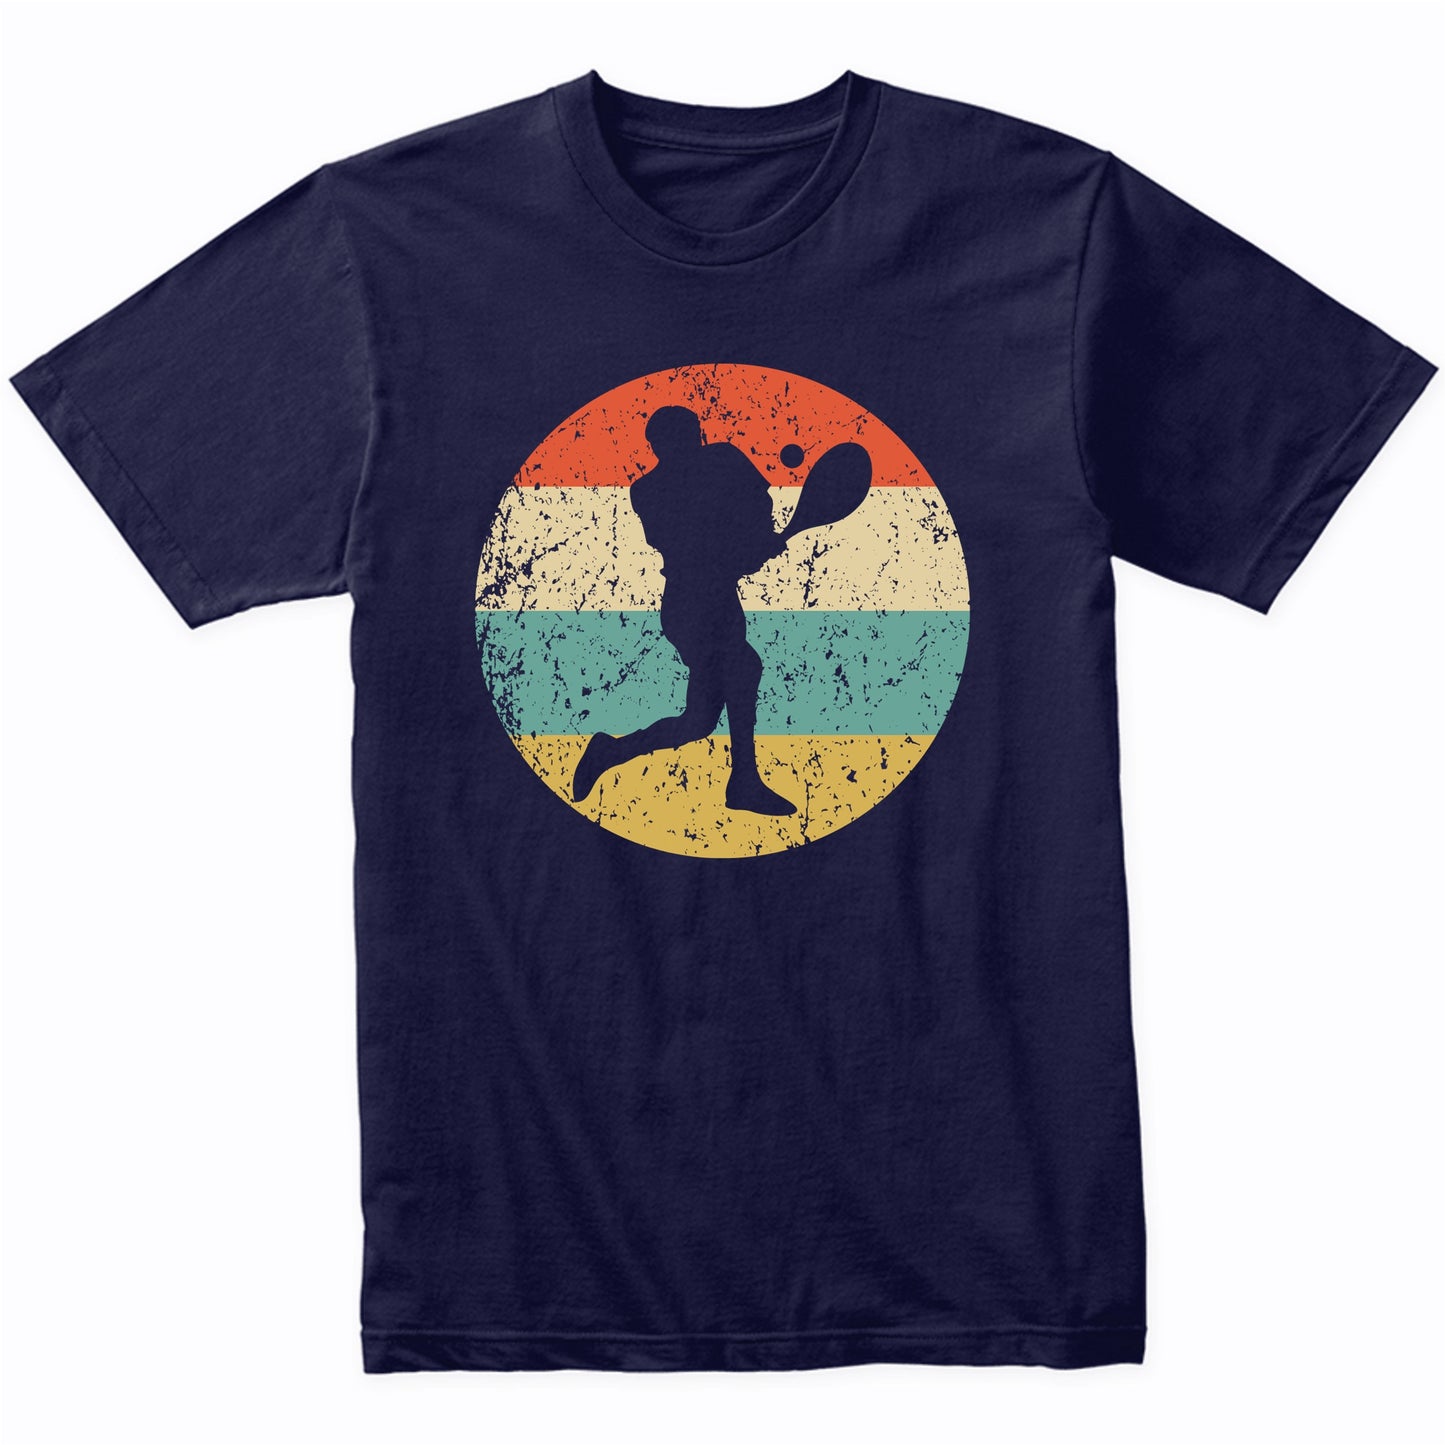 Tennis Shirt - Vintage Retro Tennis Player T-Shirt